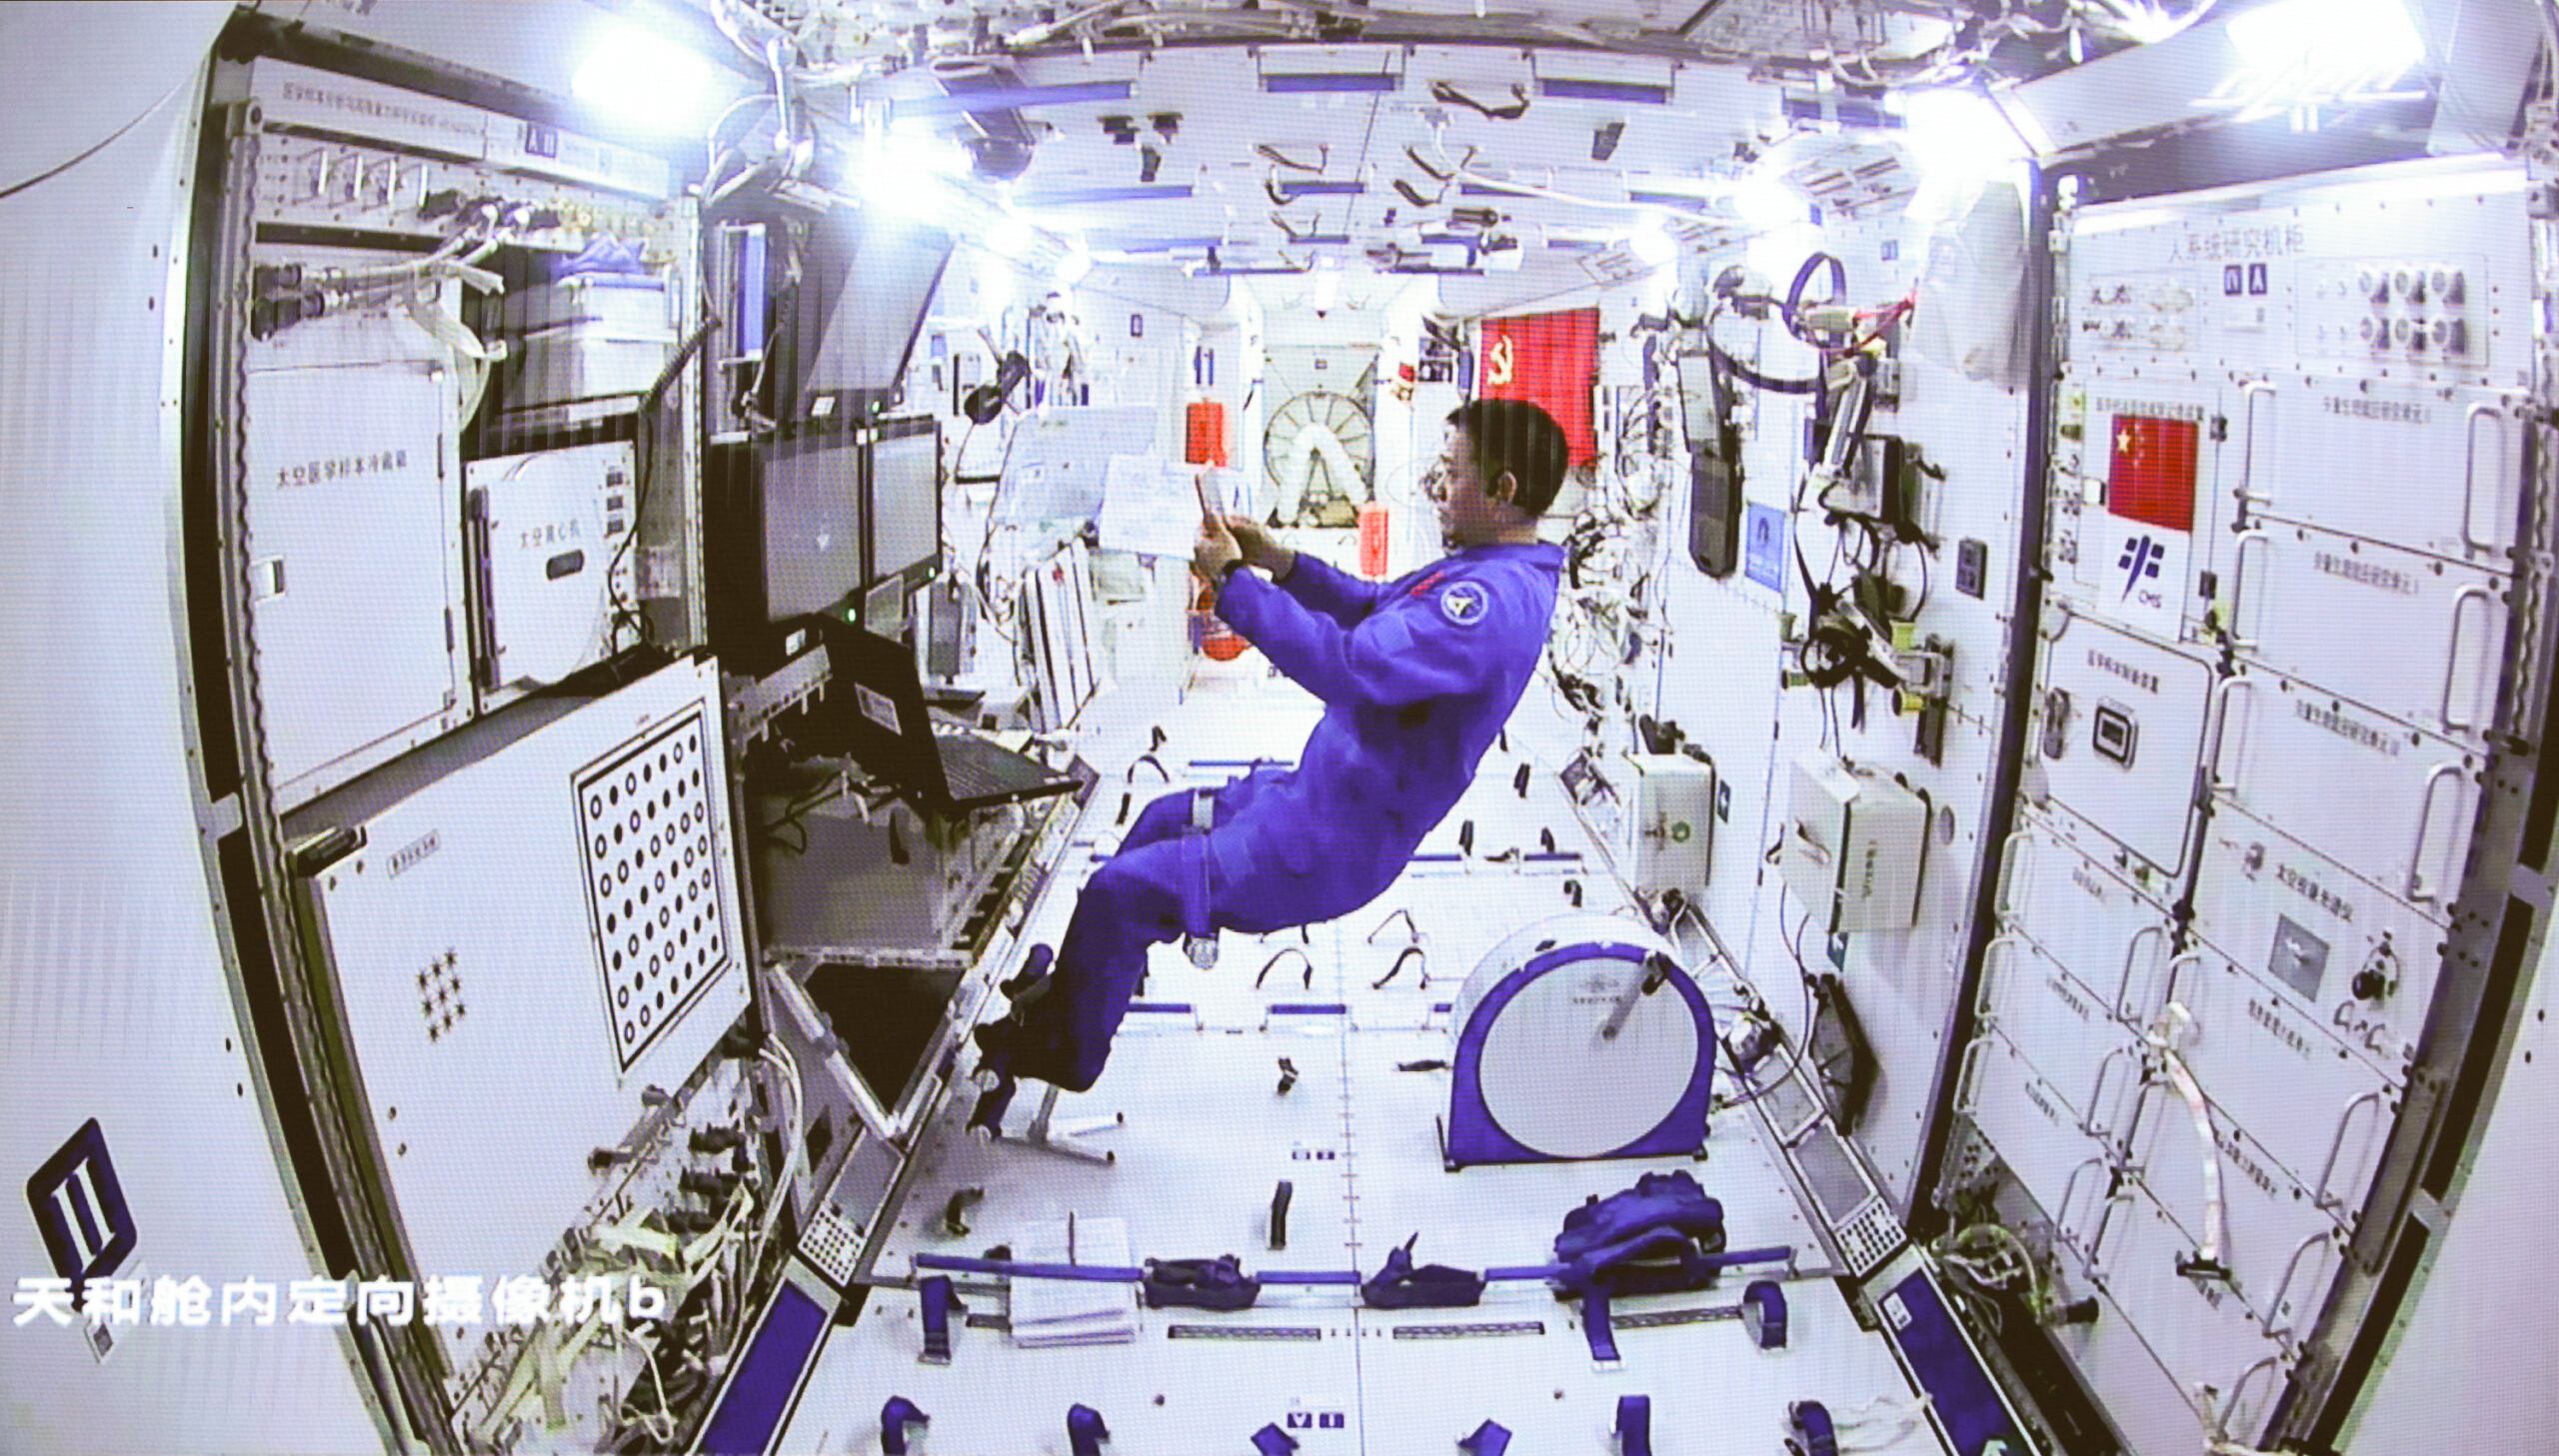 เทคโนโลยีใหม่หนุน ‘ชีวิตในวงโคจร’ นักบินอวกาศจีน สะดวกสบายยิ่งขึ้น